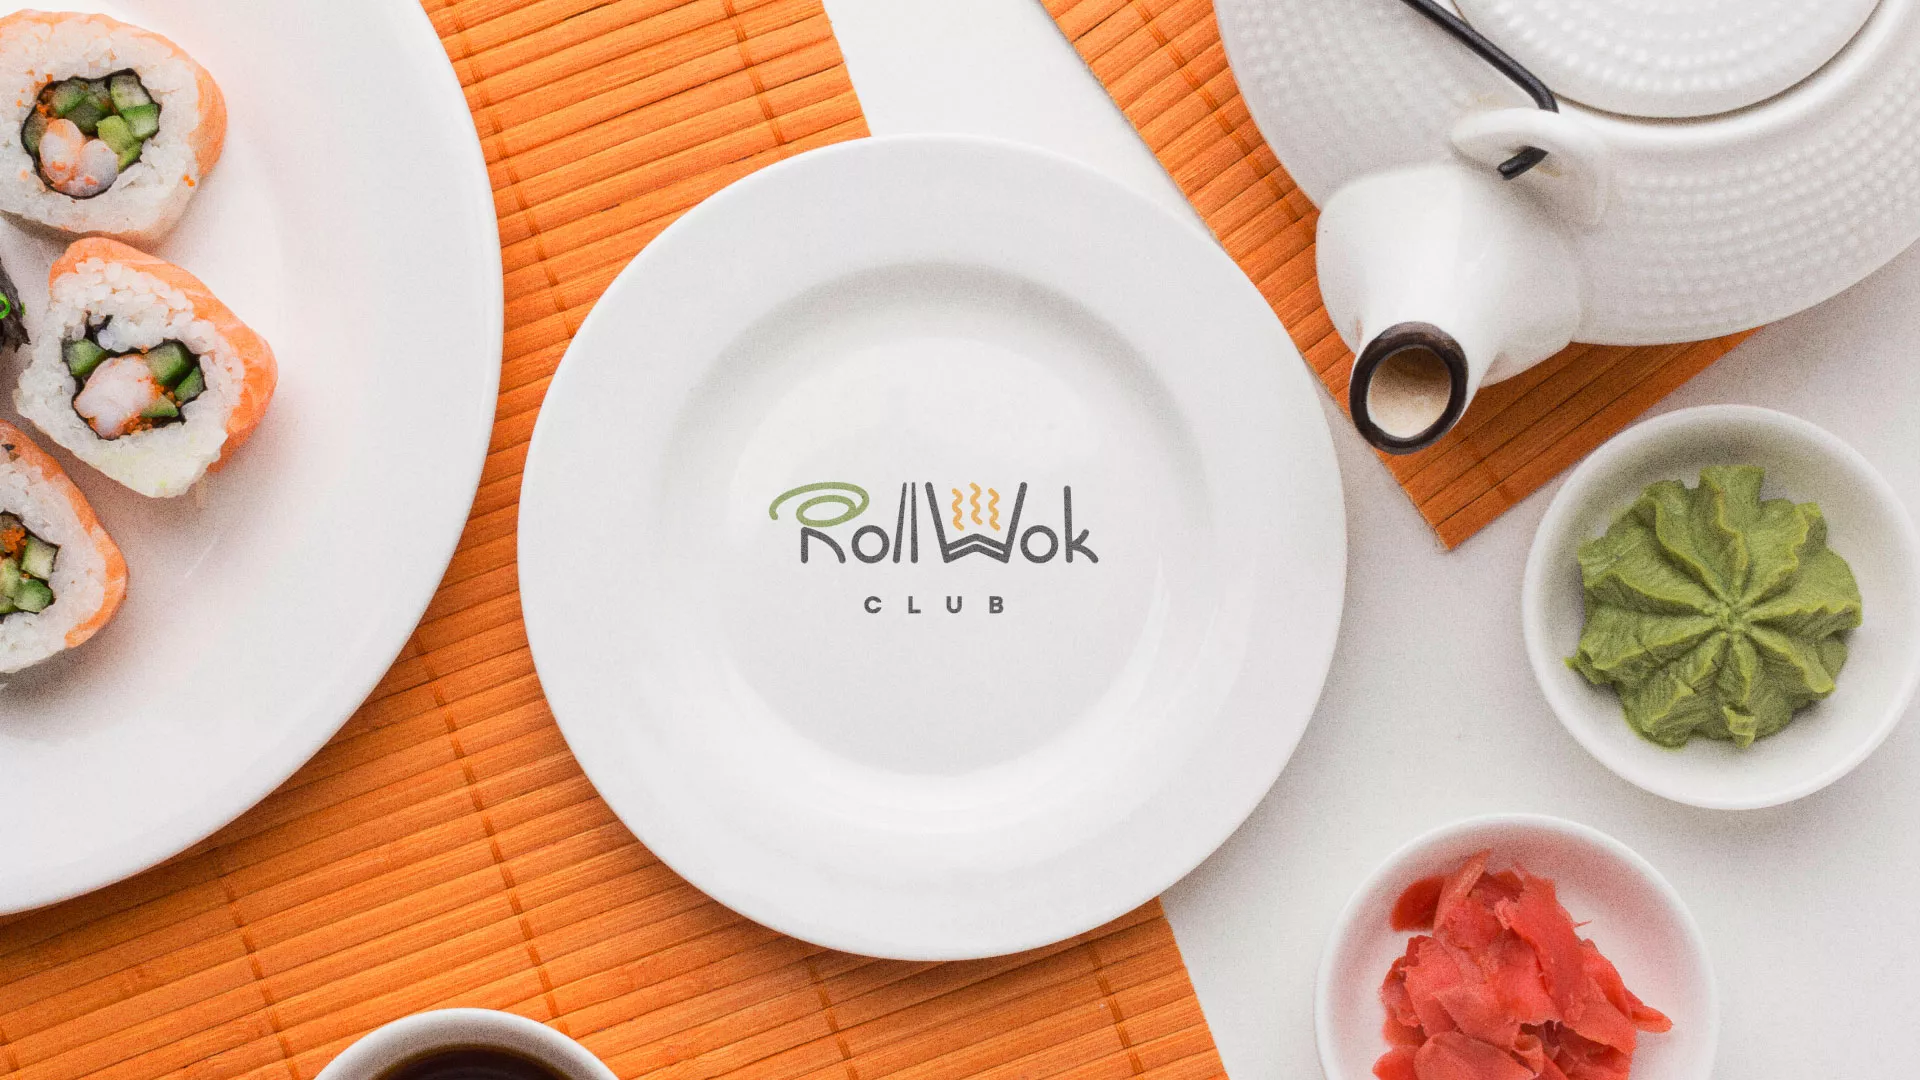 Разработка логотипа и фирменного стиля суши-бара «Roll Wok Club» в Великом Устюге